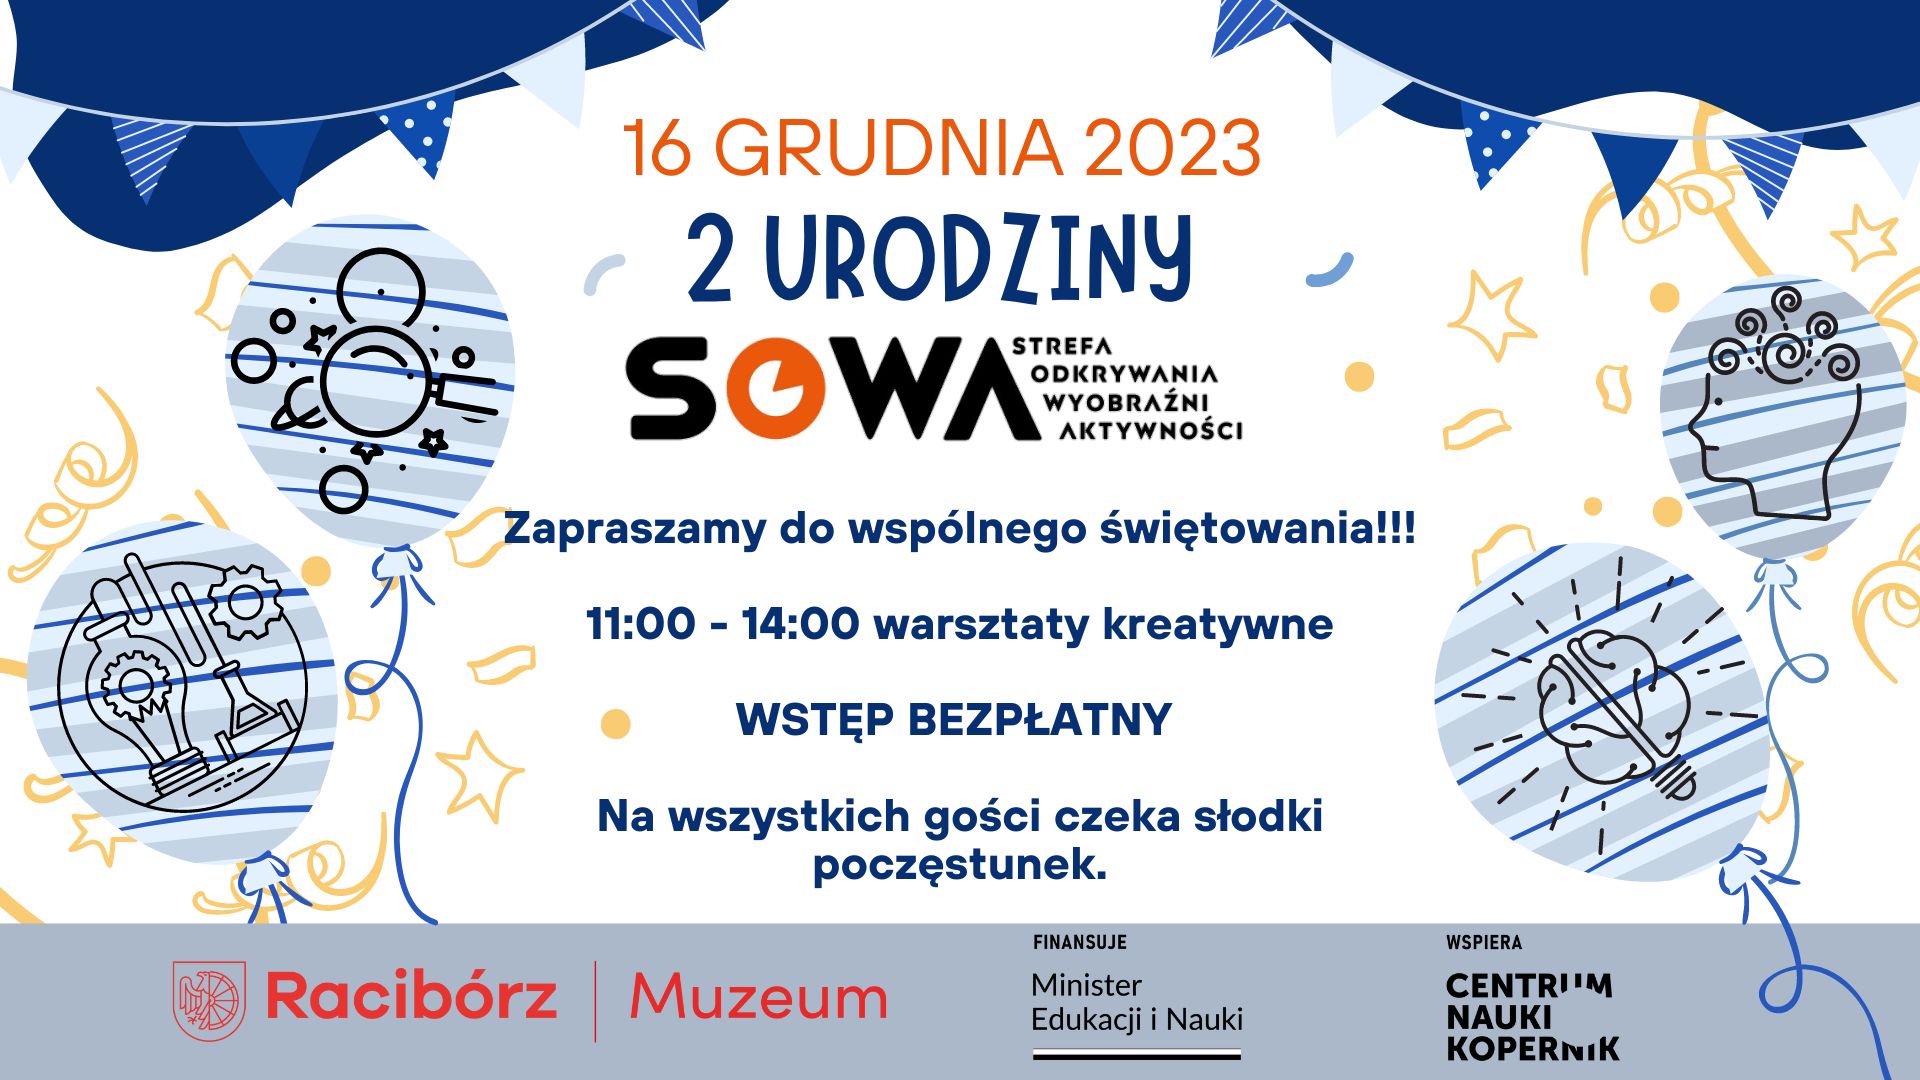 SOWA działa przy ul. Żorskiej 2 w Raciborzu. Oto program wydarzenia organizowanego w tym miejscu 16 grudnia 2023 r. Źródło: SOWA